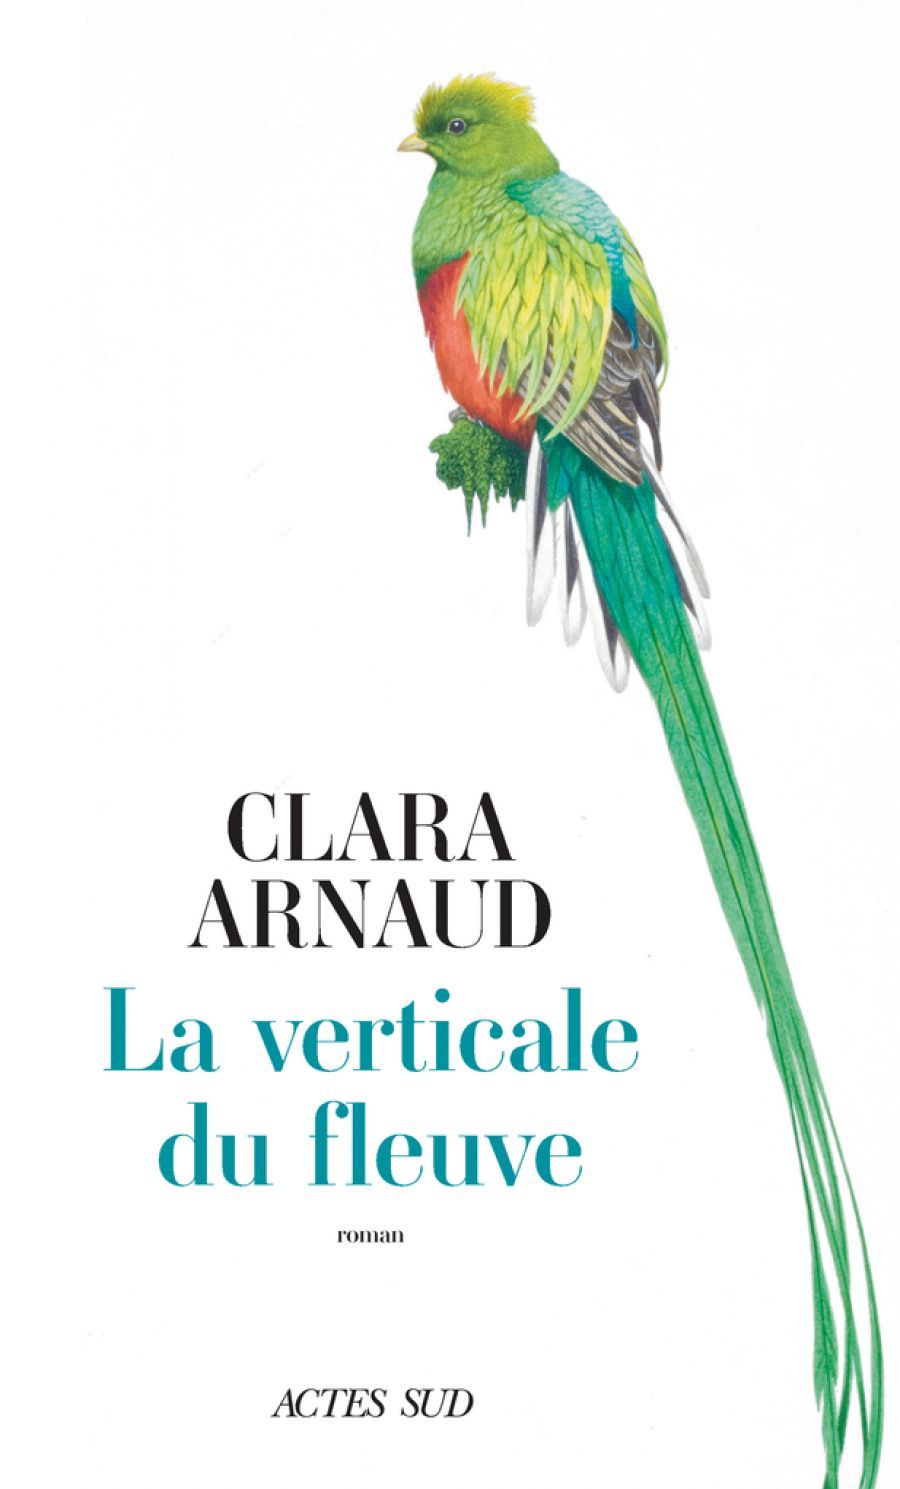 Grand Bivouac - Salon du Livre - Signature/Dédicace : Clara Arnaud